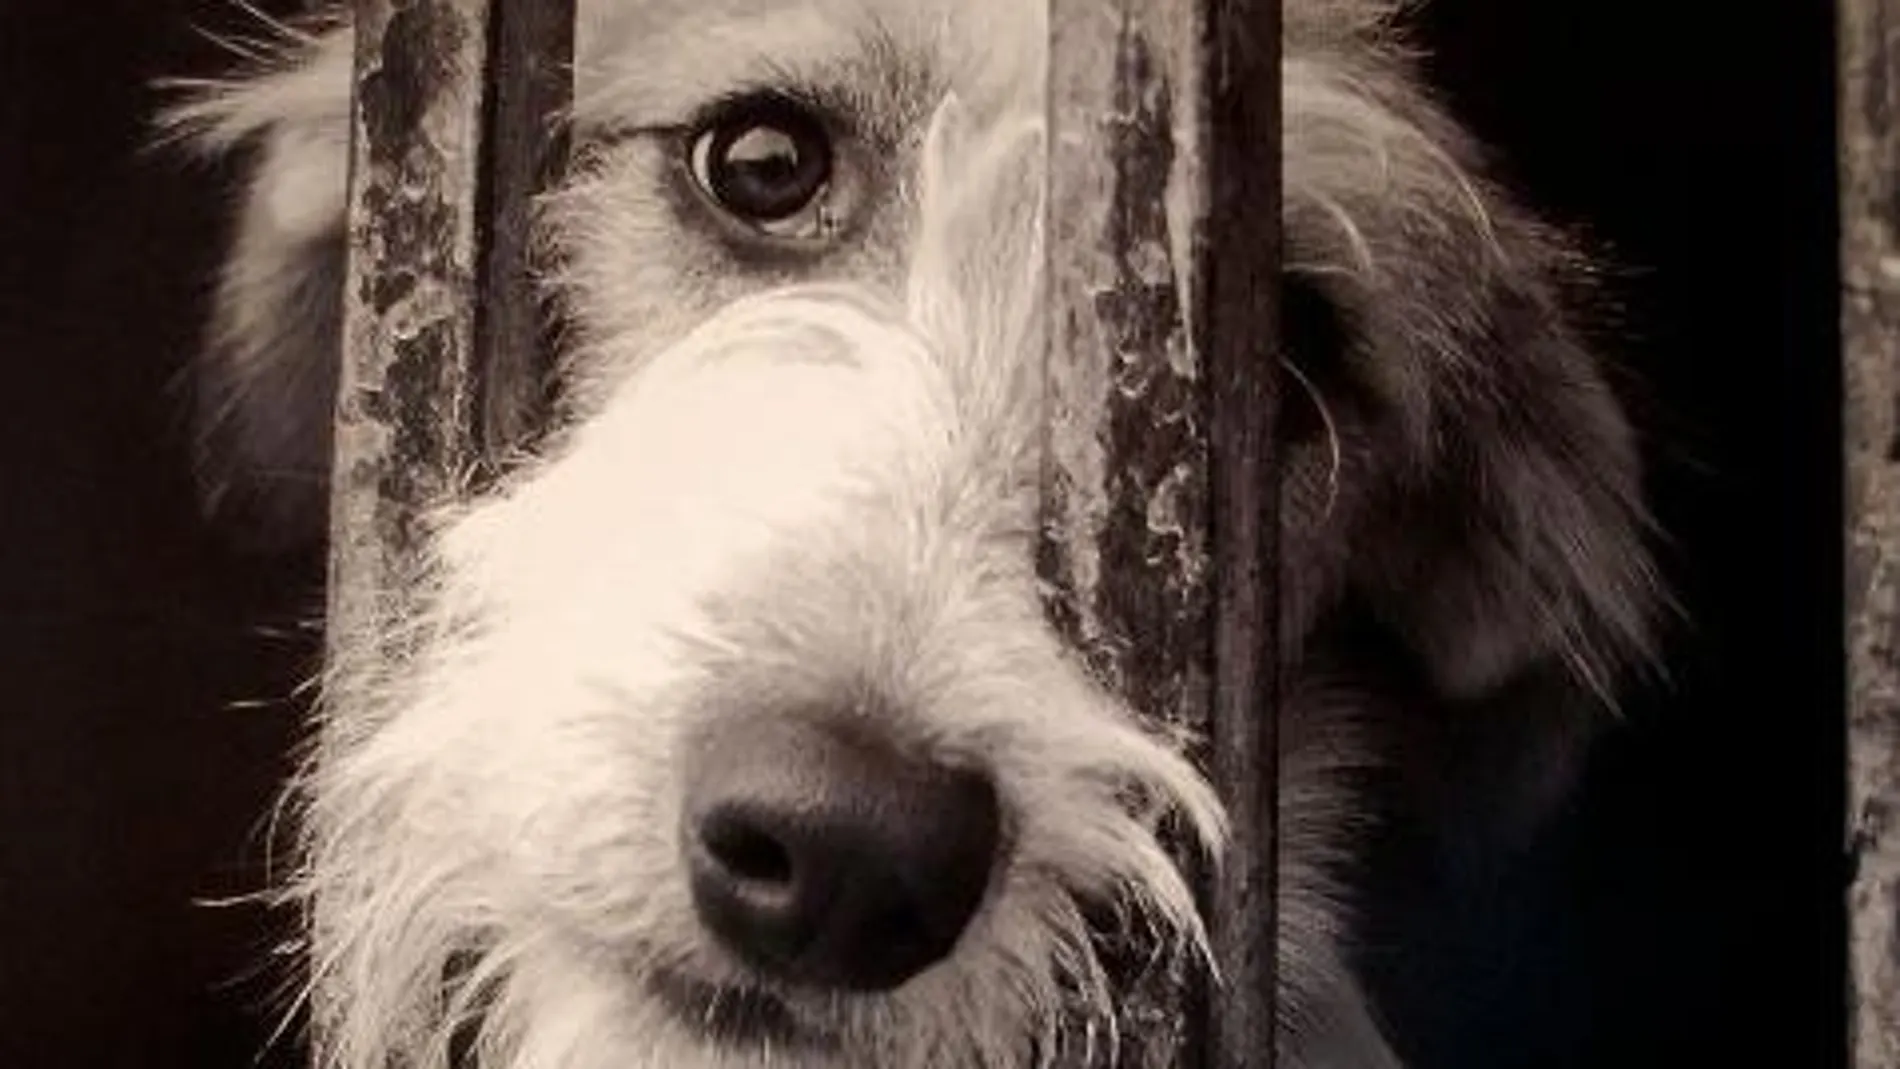 En caso de maltrato, sentimos más empatía por los perros que por los humanos adultos